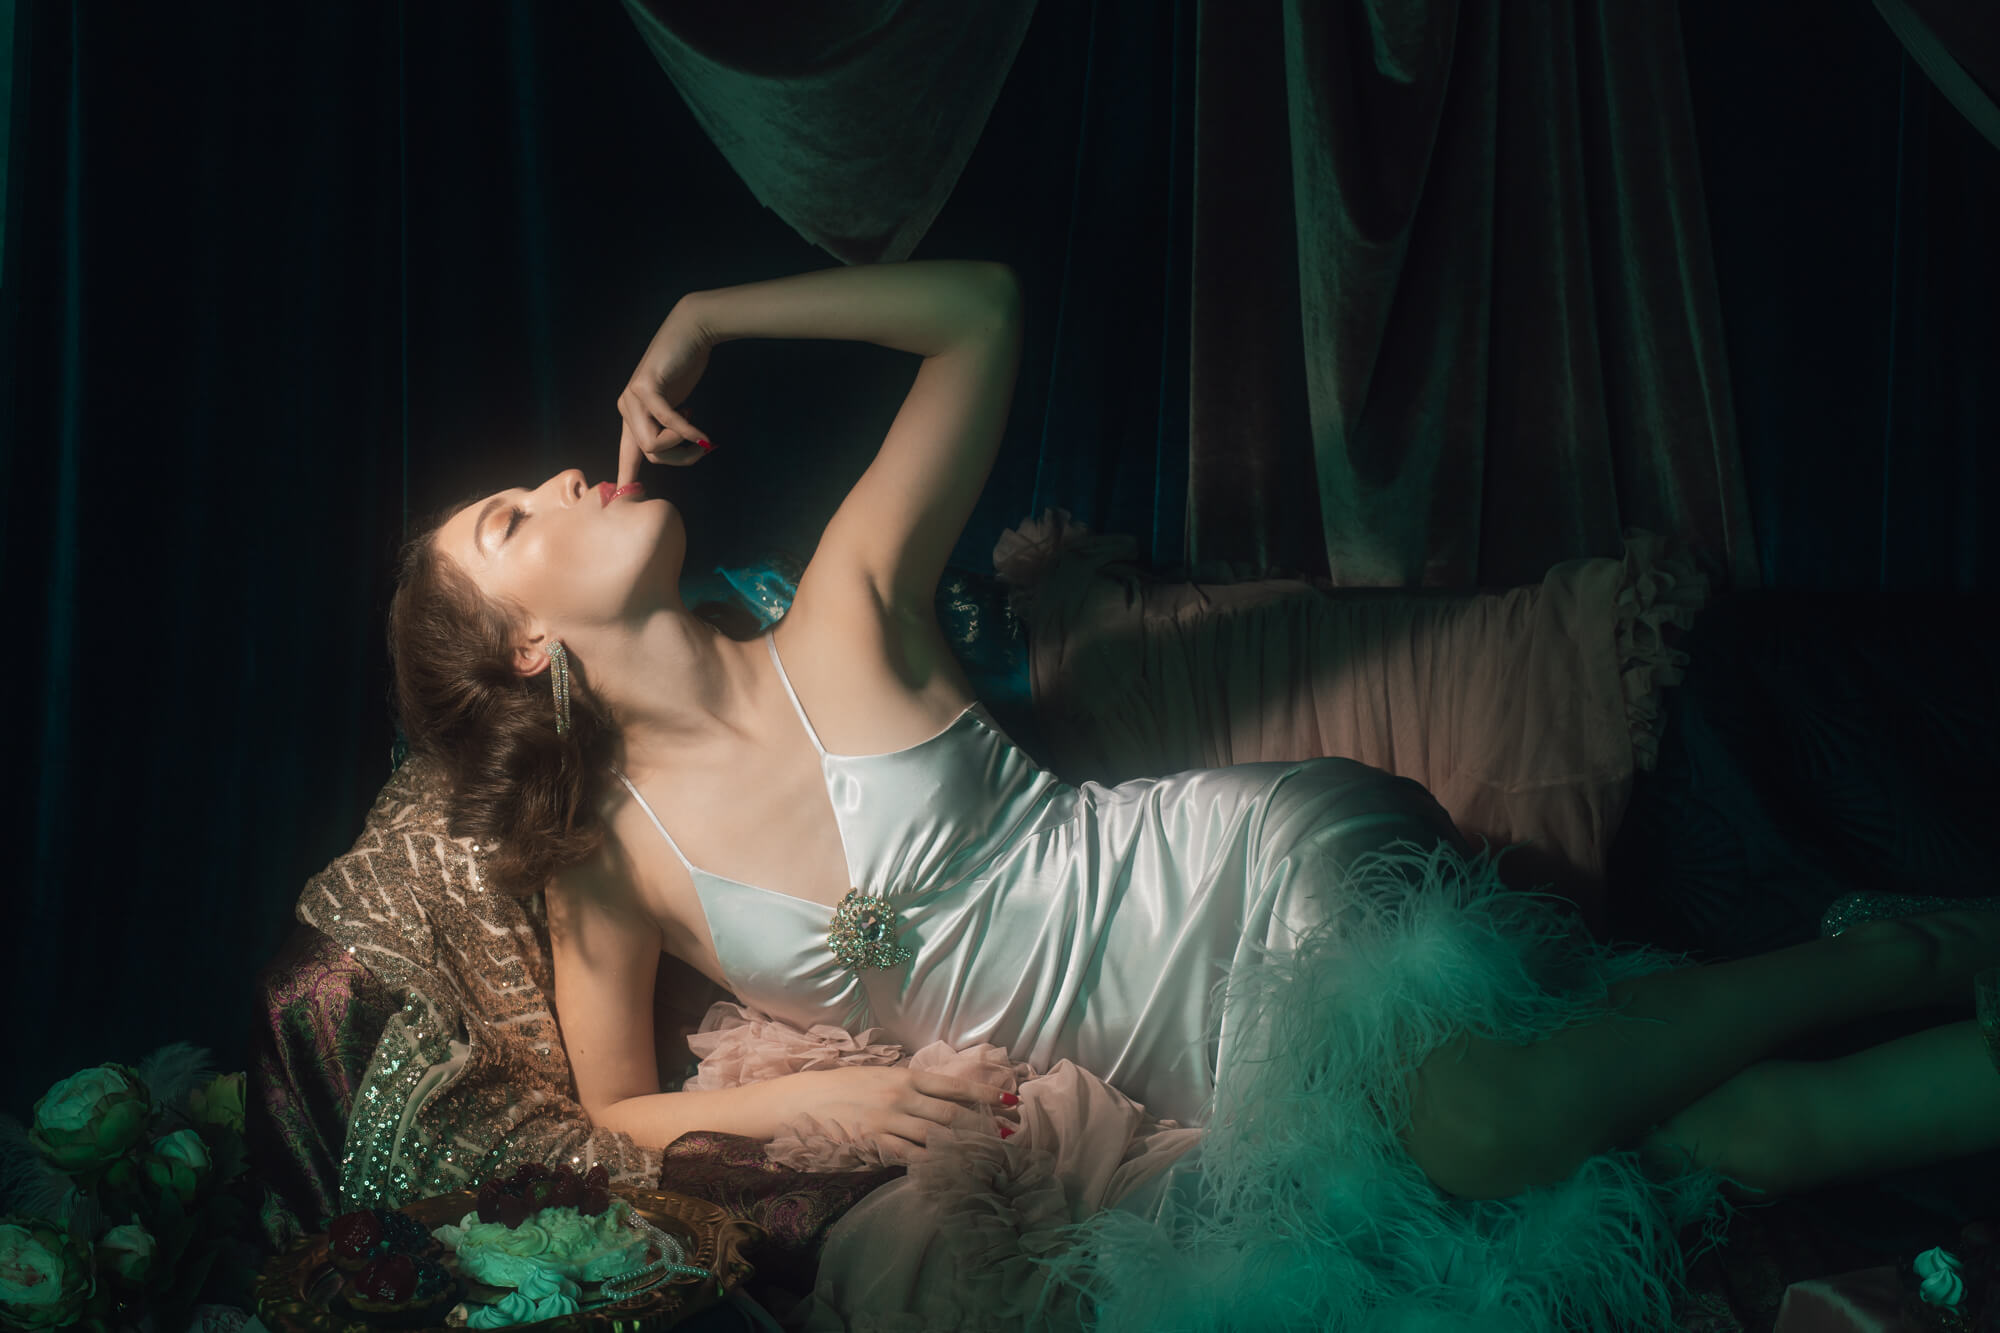 emilia lyon malarska fotografia sensualna